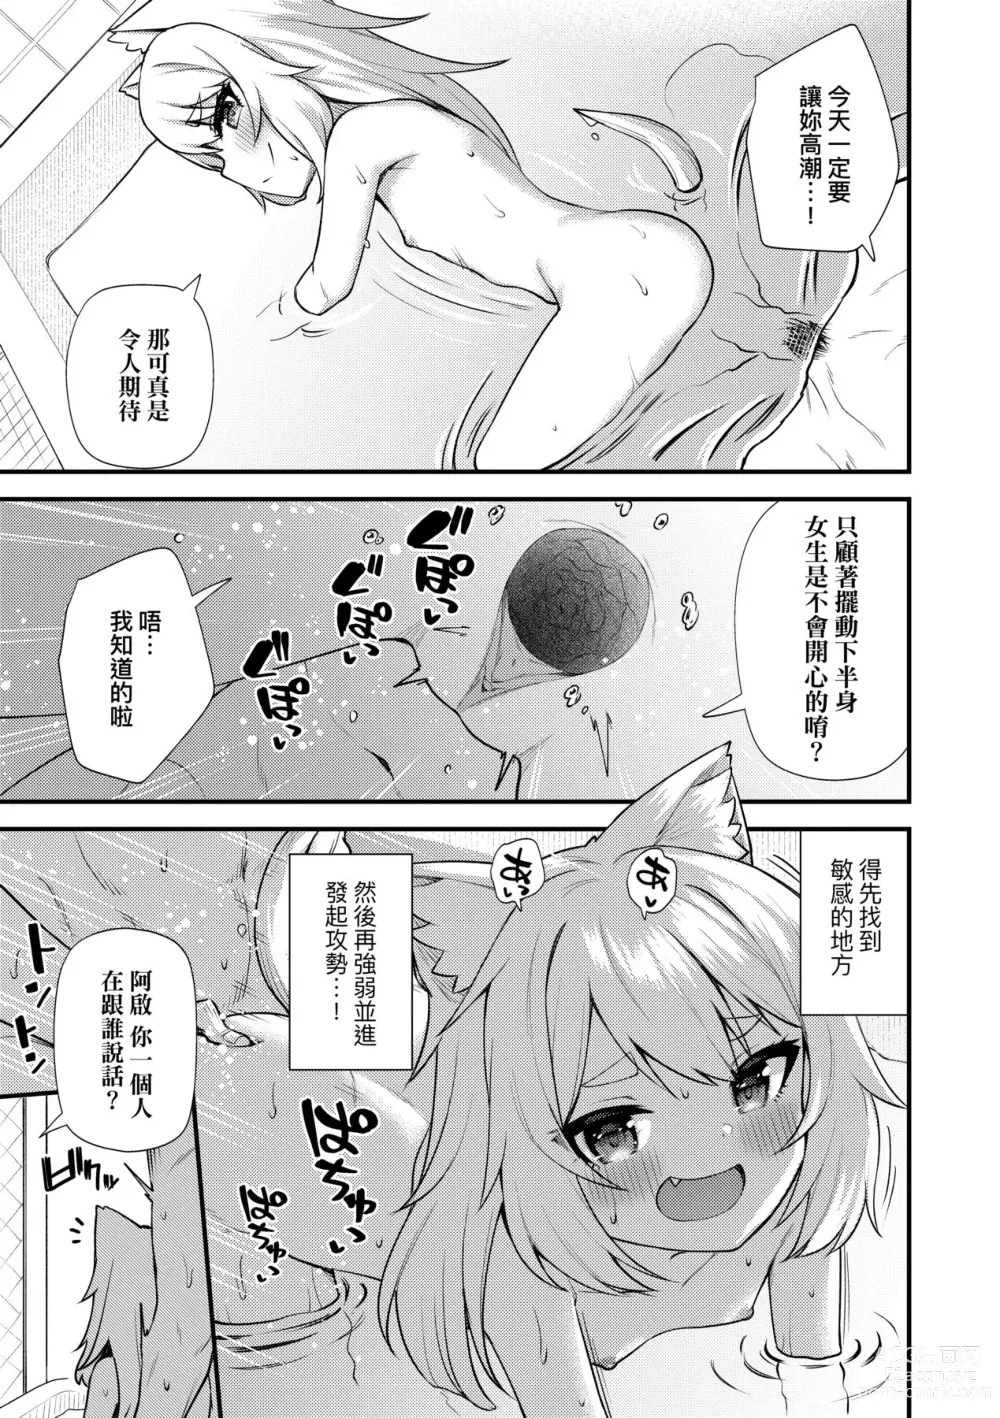 Page 182 of manga Chojyu Giga (decensored)